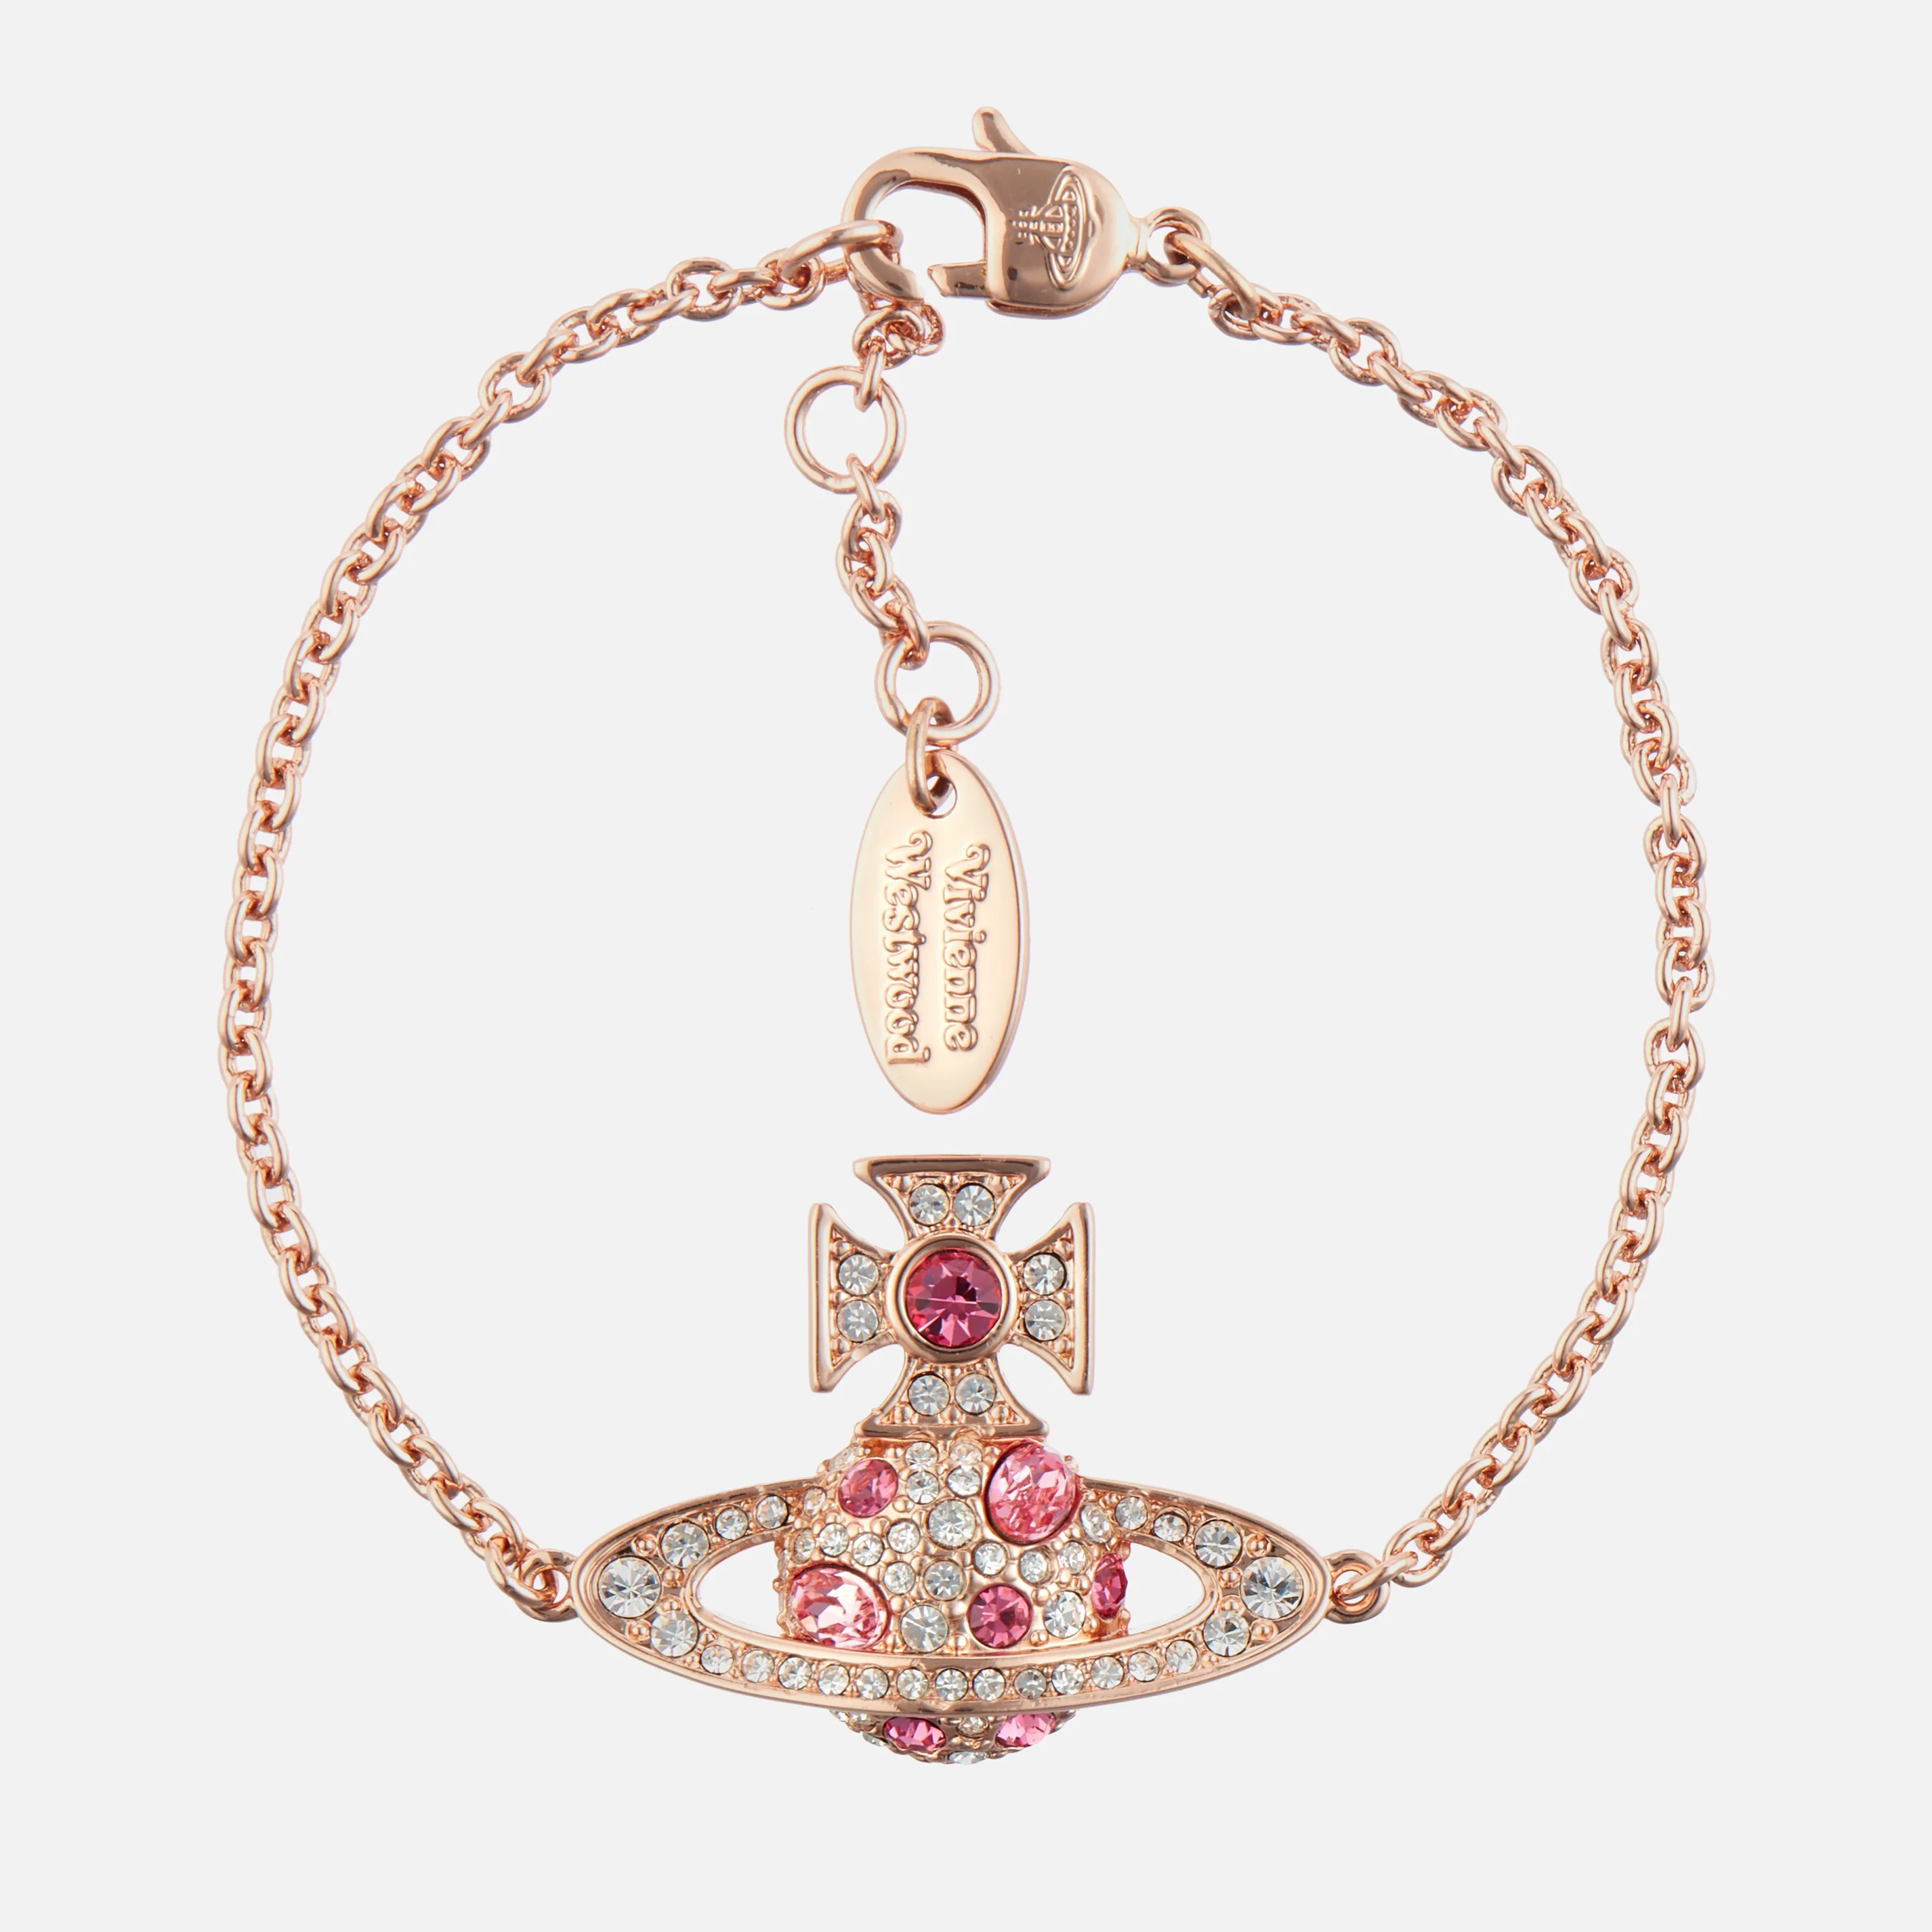 Vivienne Westwood Women's Francette Bas Relief Bracelet - Pink Gold/Rose Image 1